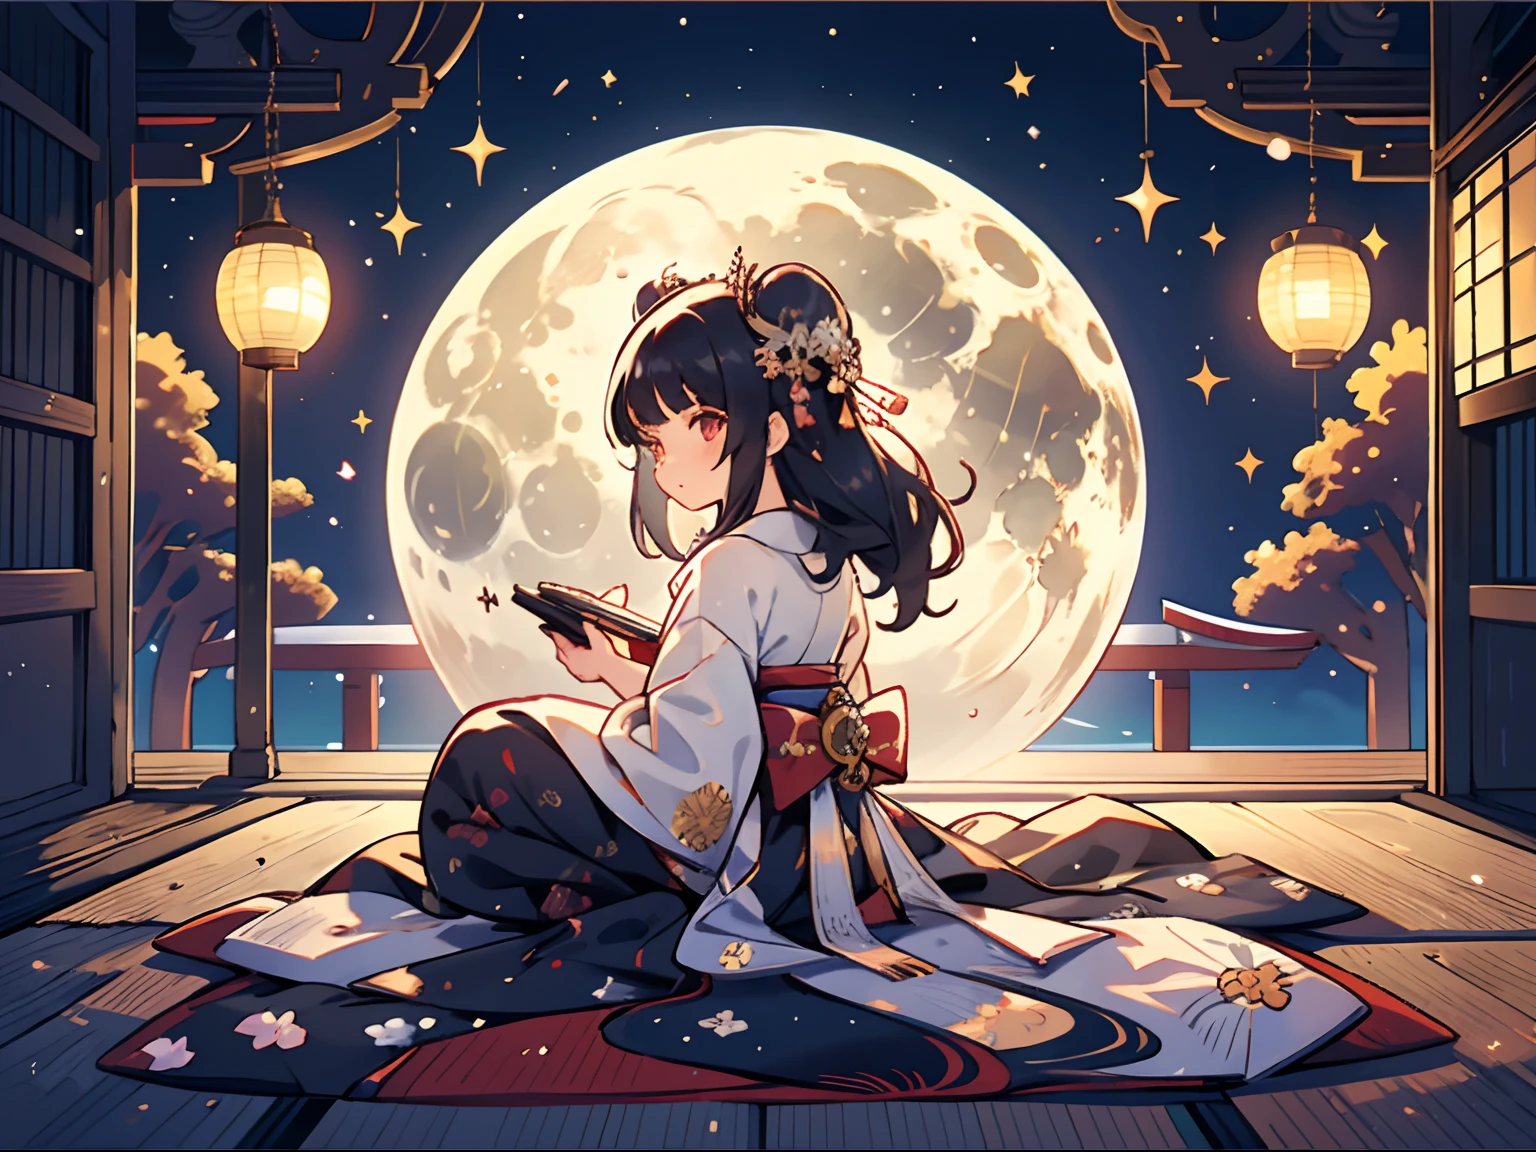 一人の女の子が後ろ向きに月を眺めている, 床に垂れ下がった長い黒髪の少女, 十一着物は平安時代の貴族の女性が着ていた十重の着物である., 月の裏側, 後ろの女の子がとても美しい月を眺めている, (日本風のベランダで:1.2), 月見団子を脇に置いておく, 近くには煤の入った花瓶が置かれている, カラフル, 超詳細な, 高画質, [[[[[複数の腕]]]]]